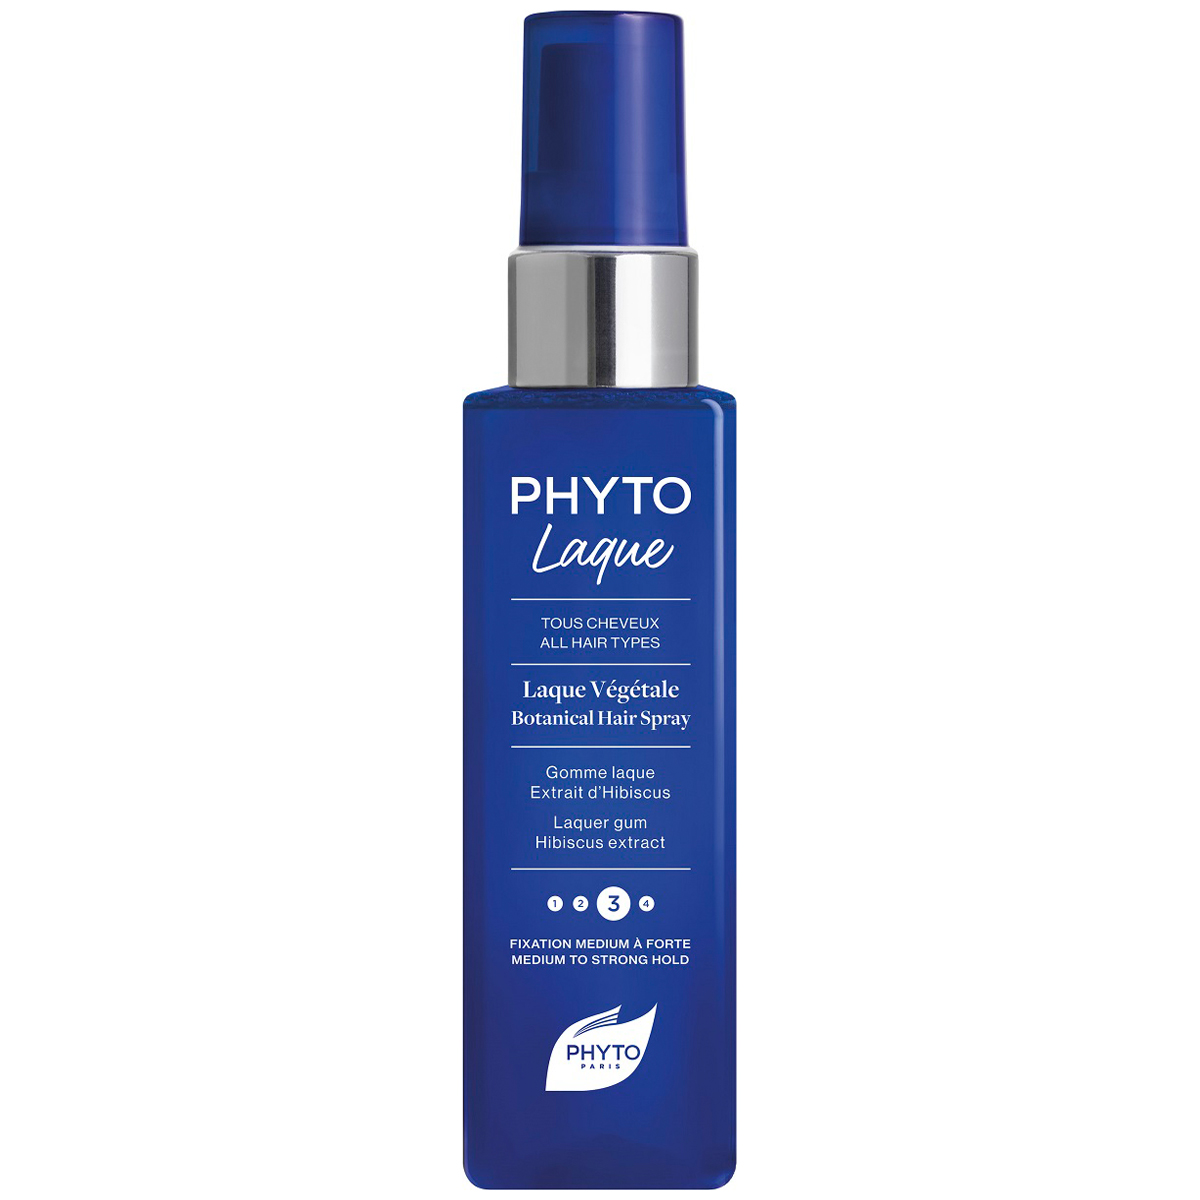 Phyto Растительный лак для волос с средней фиксацией, 100 мл (Phyto, Phytolaque) phyto лак для волос phytolaque soie слабая фиксация 100 мл